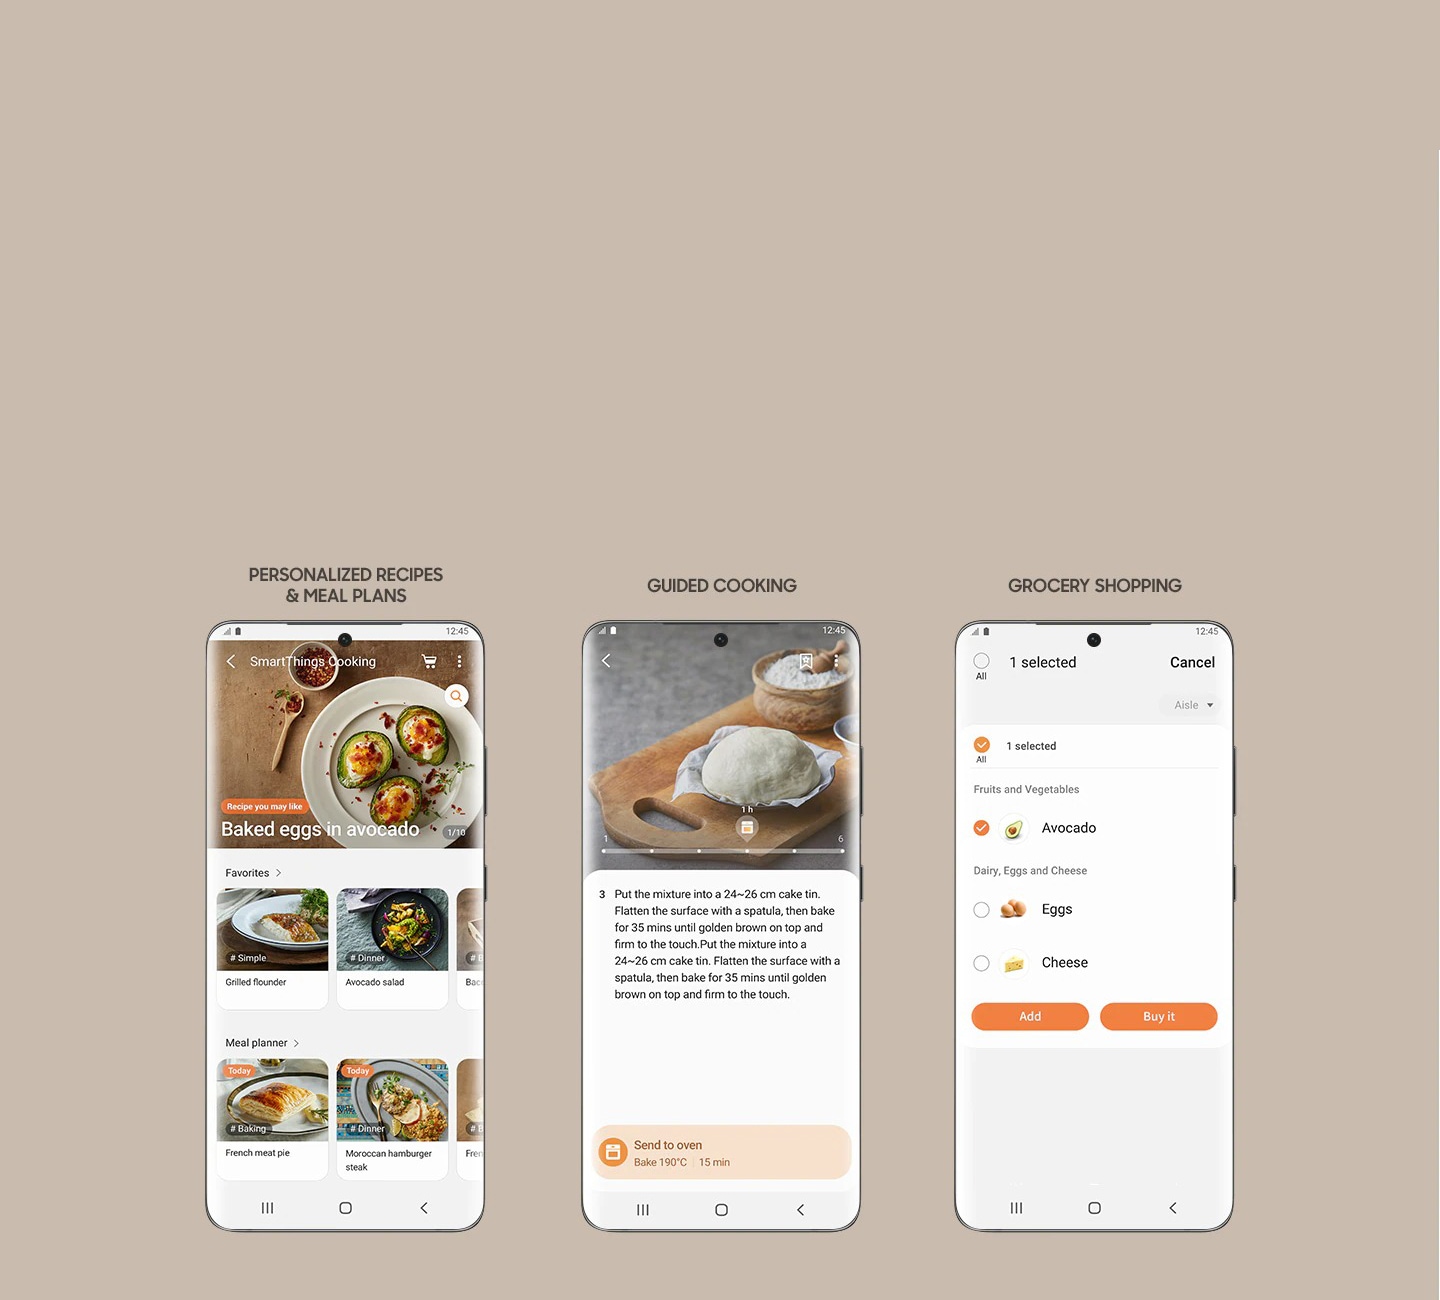 Mostra 3 schermate dello smartphone dall'app SmartThings Cooking, che ti consente di accedere a ricette e piani pasto personalizzati, visualizzare le istruzioni di cottura guidate e creare una lista della spesa per acquistare gli ingredienti.